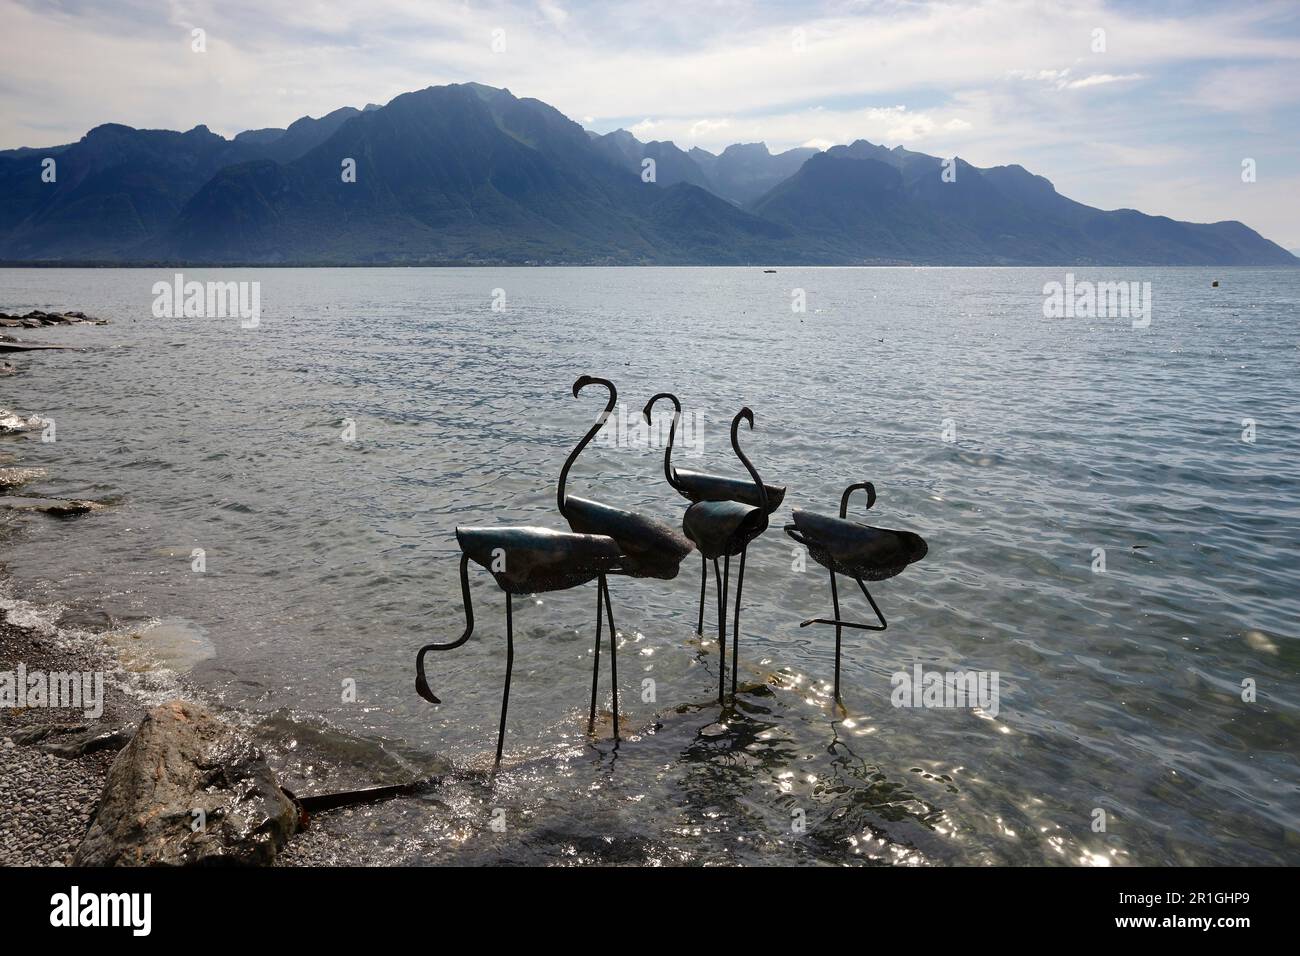 Cygnes métalliques, vue sur le lac Léman jusqu'au massif du Chablais, Montreux, Suisse Banque D'Images